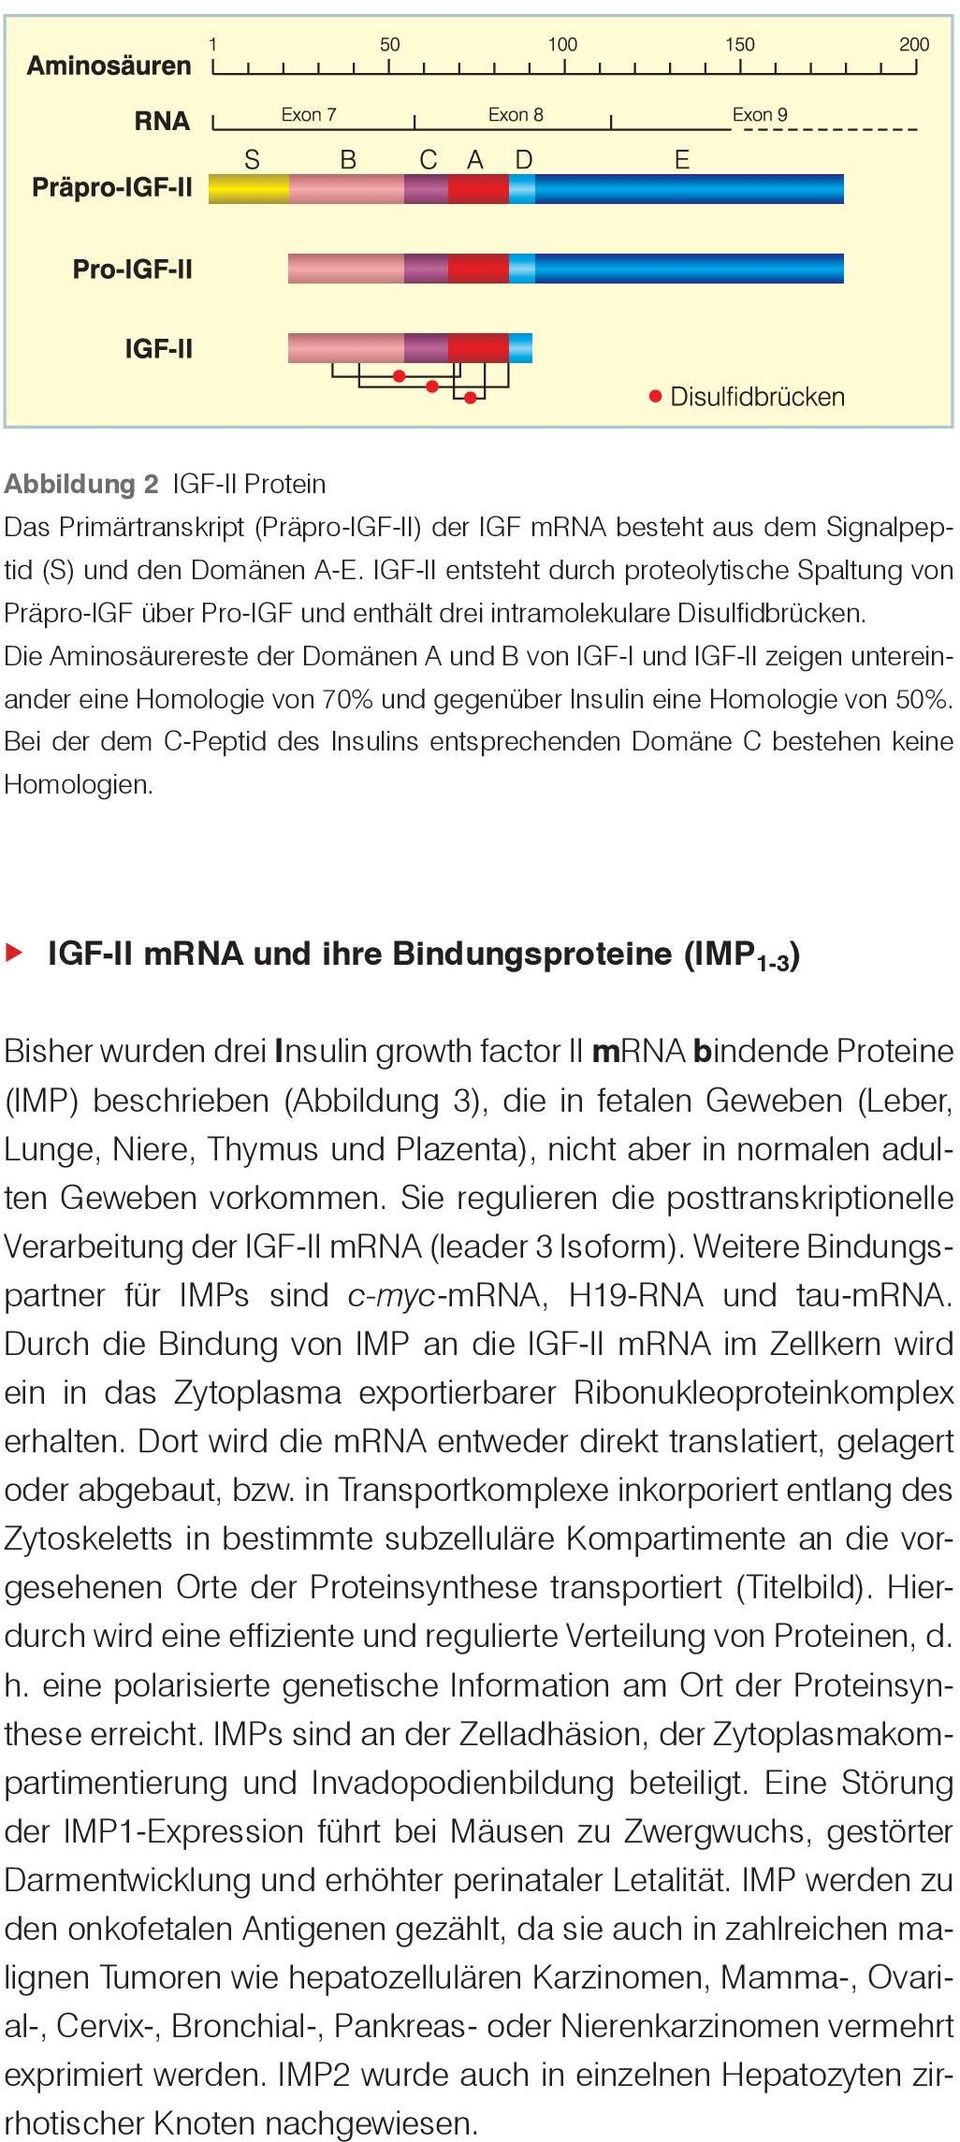 Die Aminosäurereste der Domänen A und B von IGF-I und IGF-II zeigen untereinander eine Homologie von 70% und gegenüber Insulin eine Homologie von 50%.